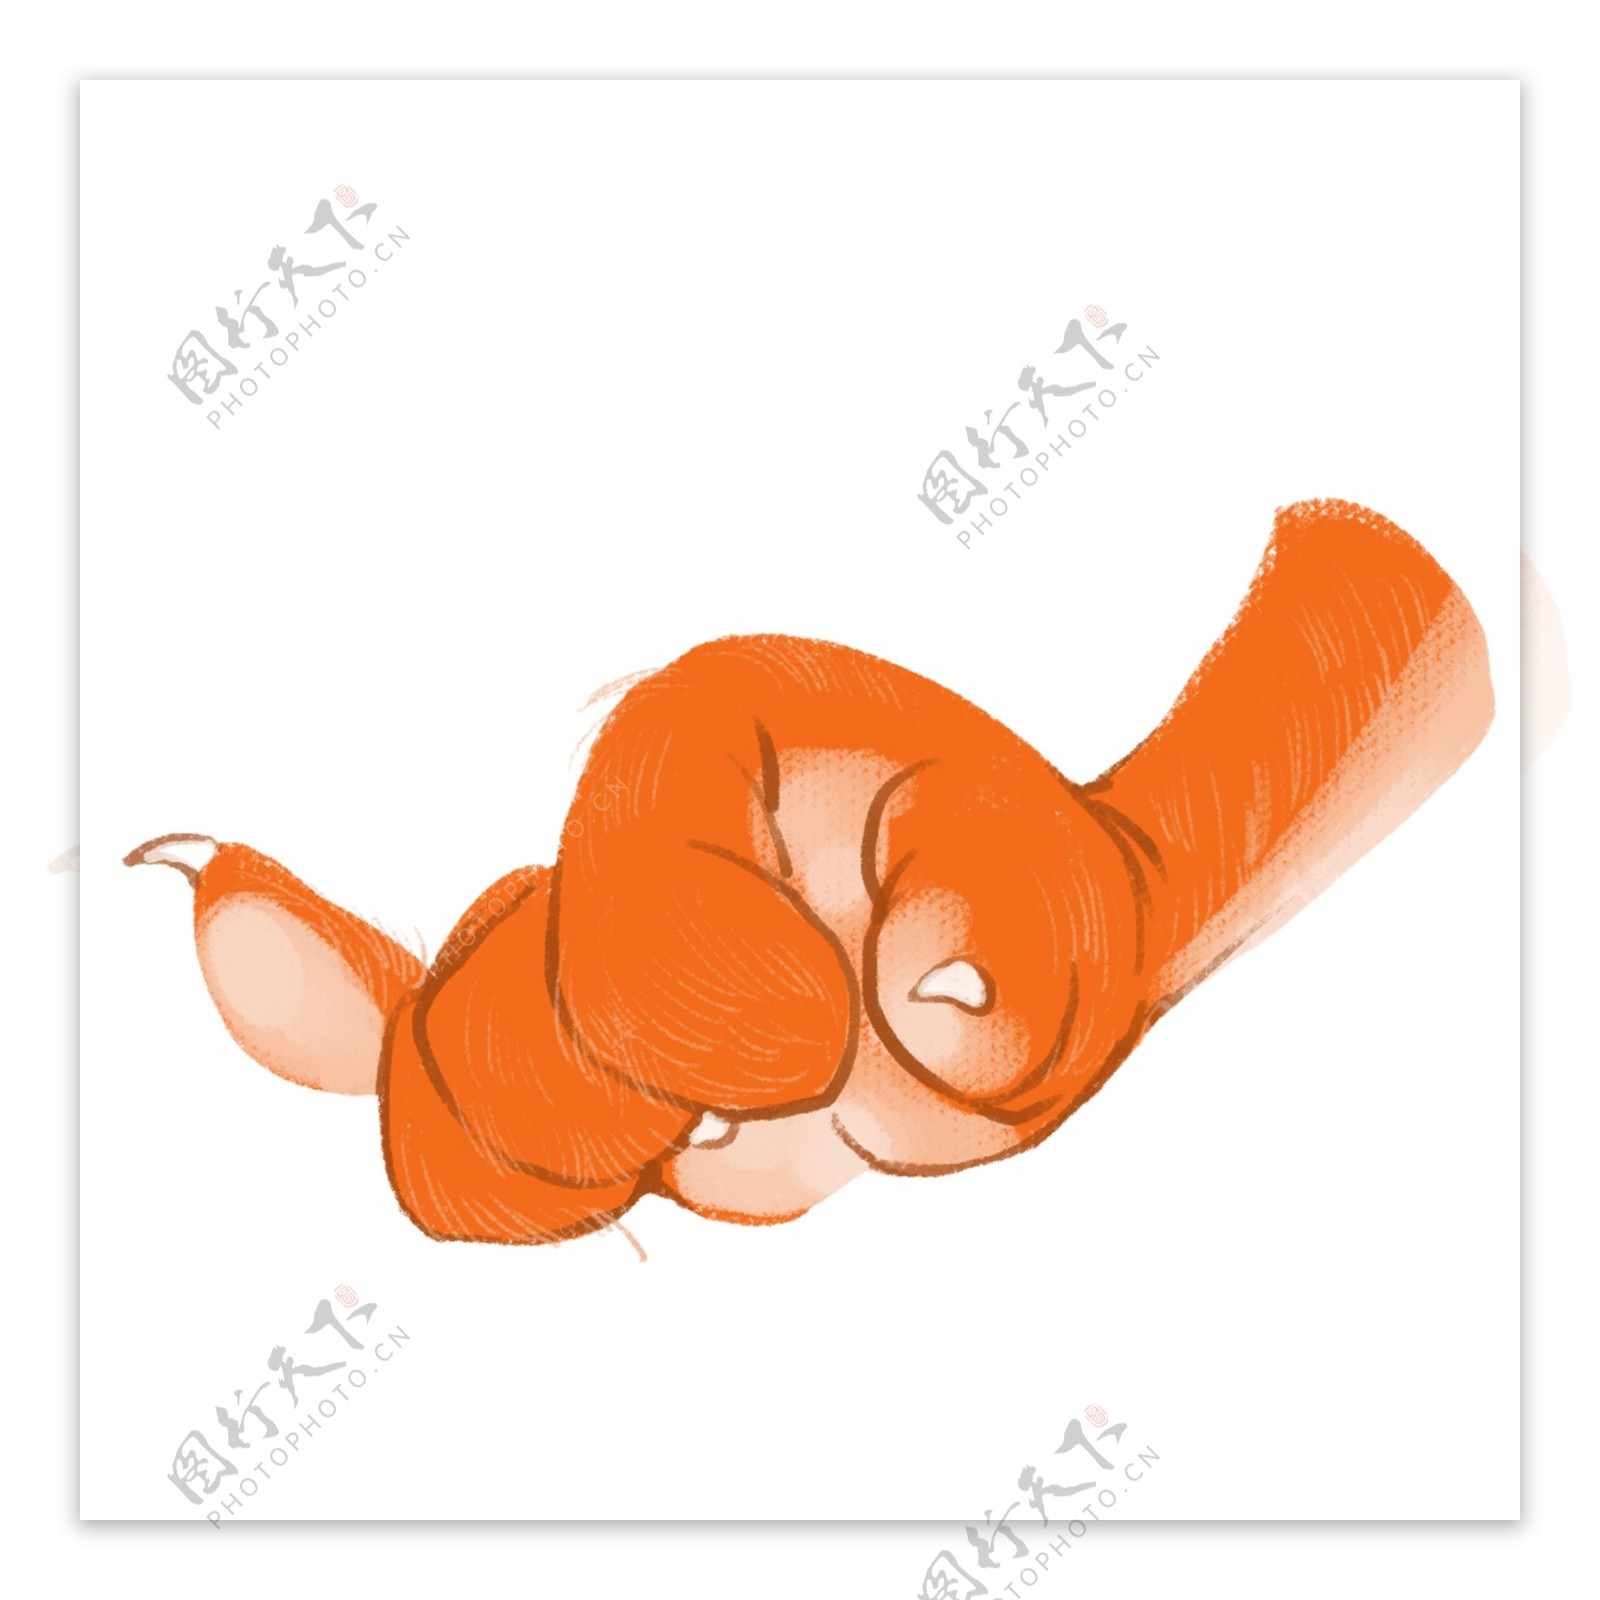 一只动物的手爪插画